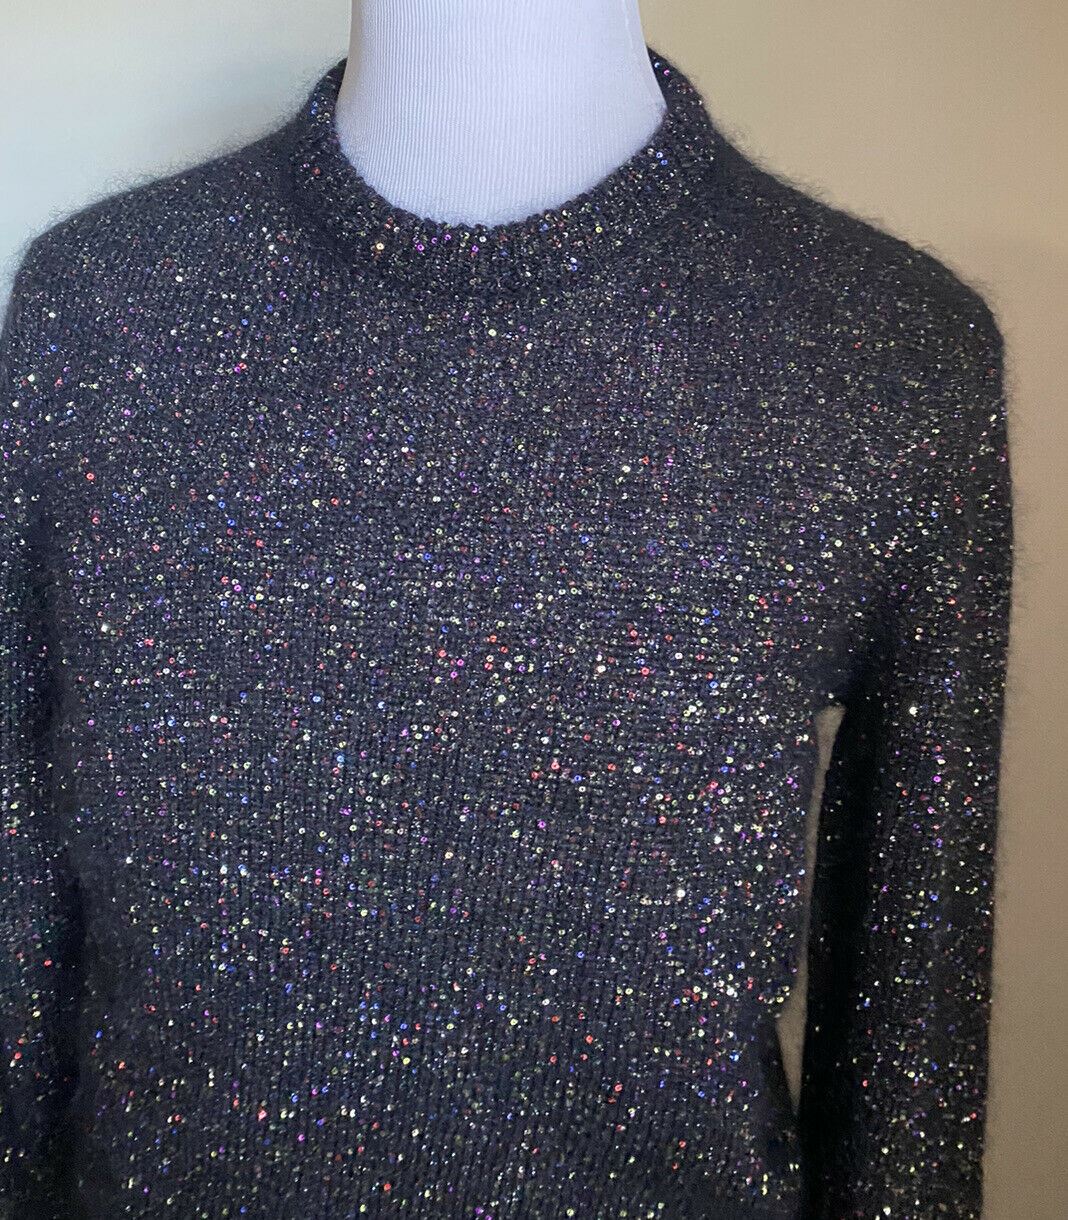 NWT $1590 Saint Laurent Men Crewneck Sweater  Black/Multicolor Size L Italy